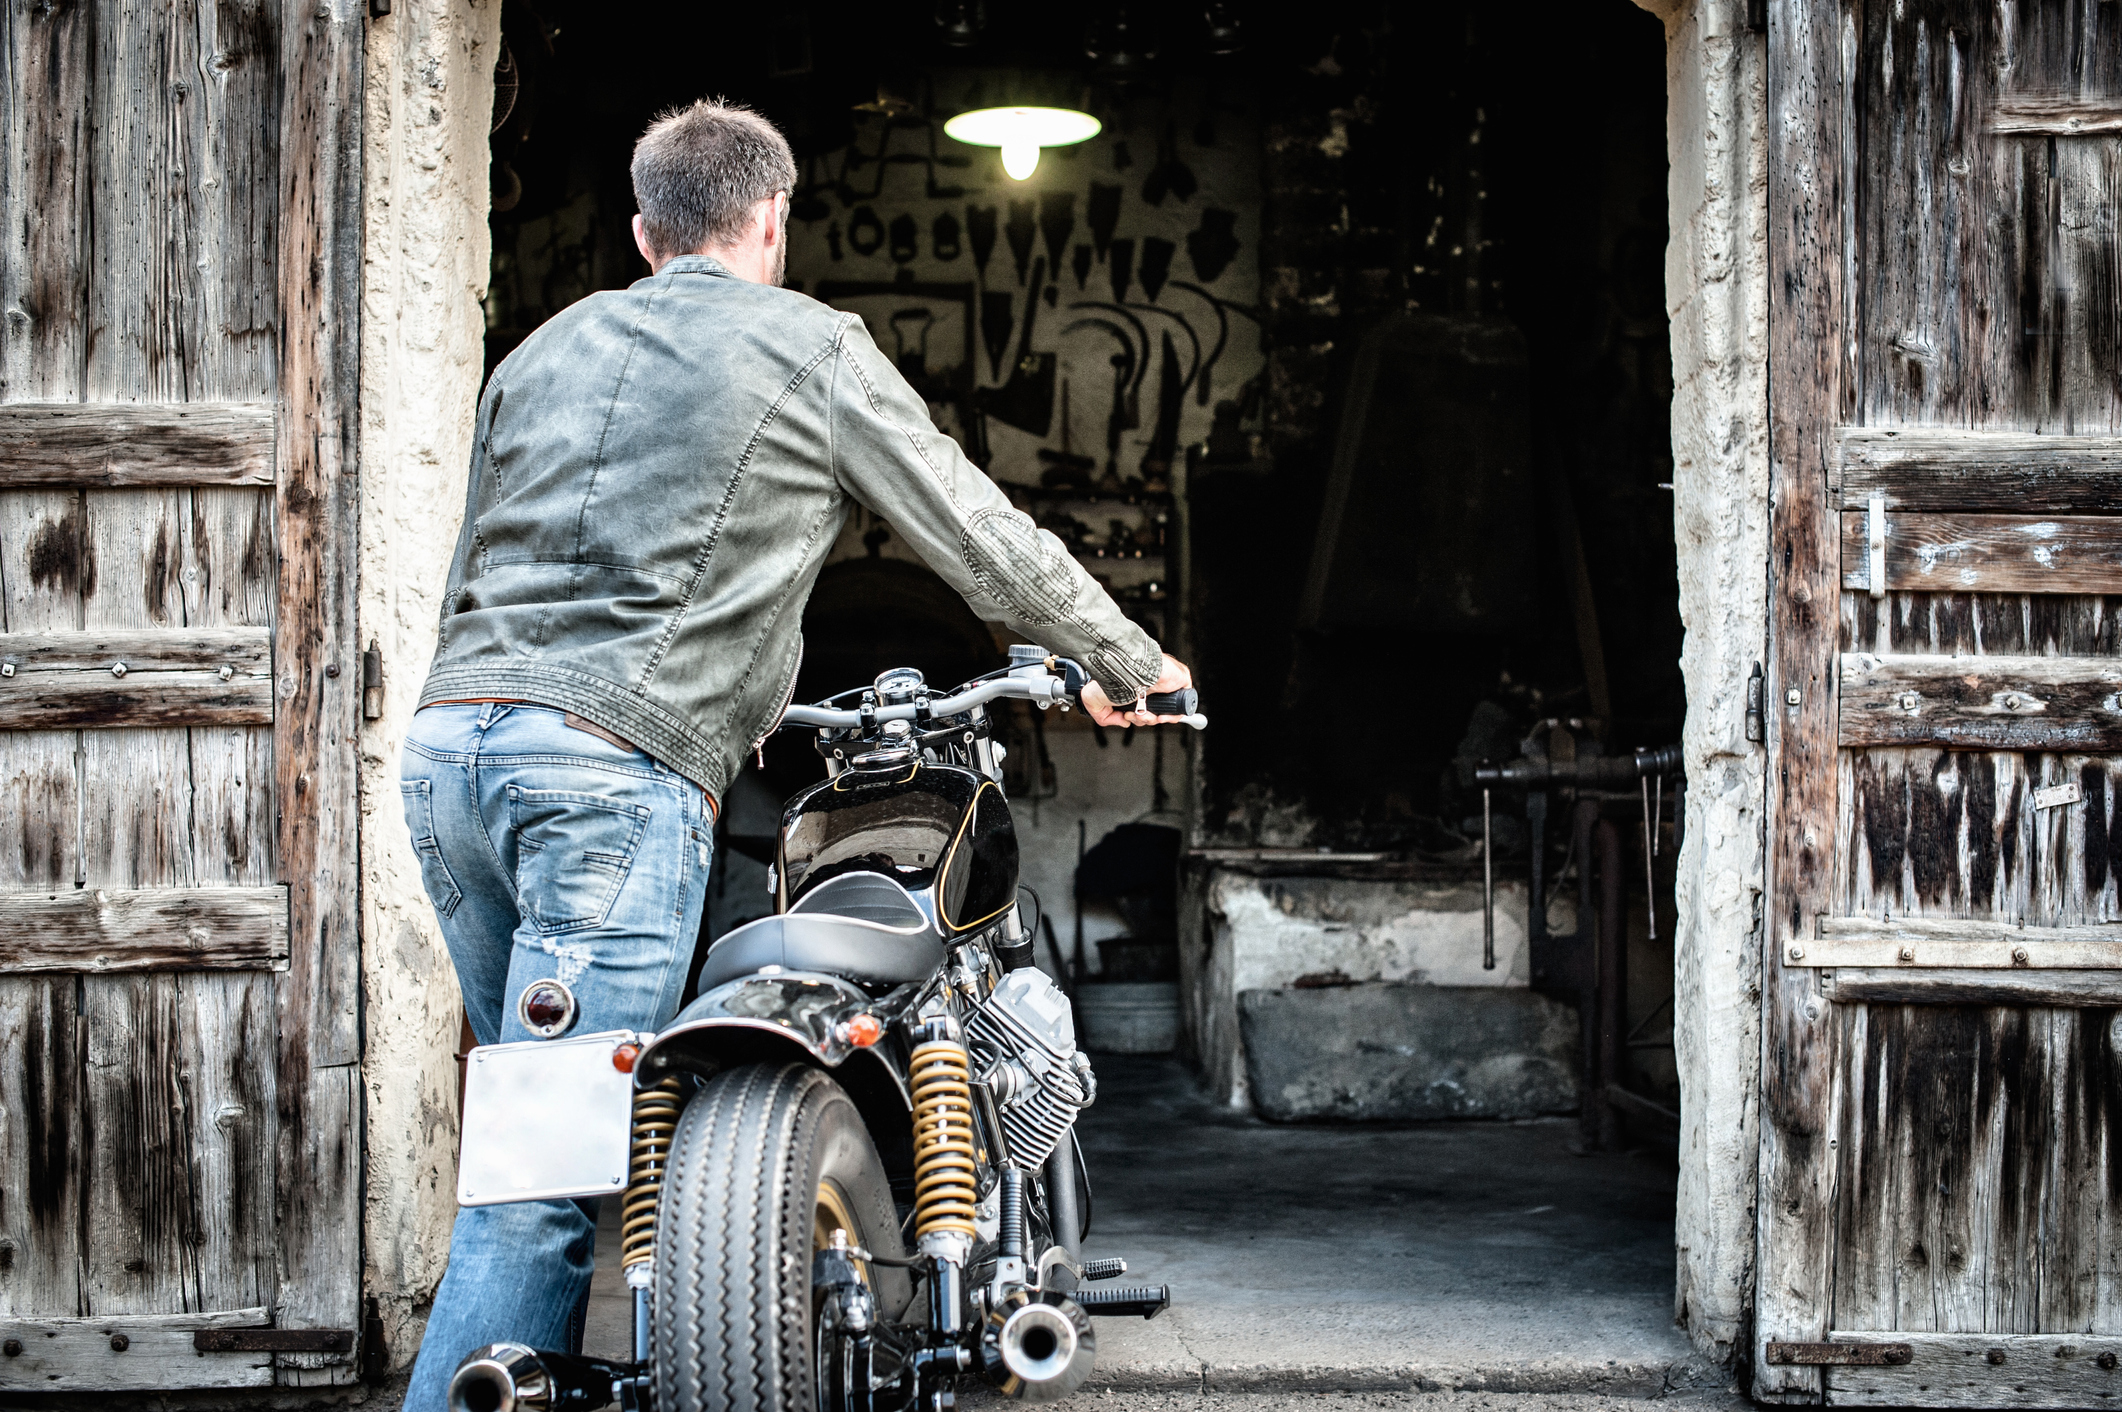 Allianz - Saisonkennzeichen Motorrad: Mann mit Jeans und Lederjacke schiebt Motorrad in eine Garage